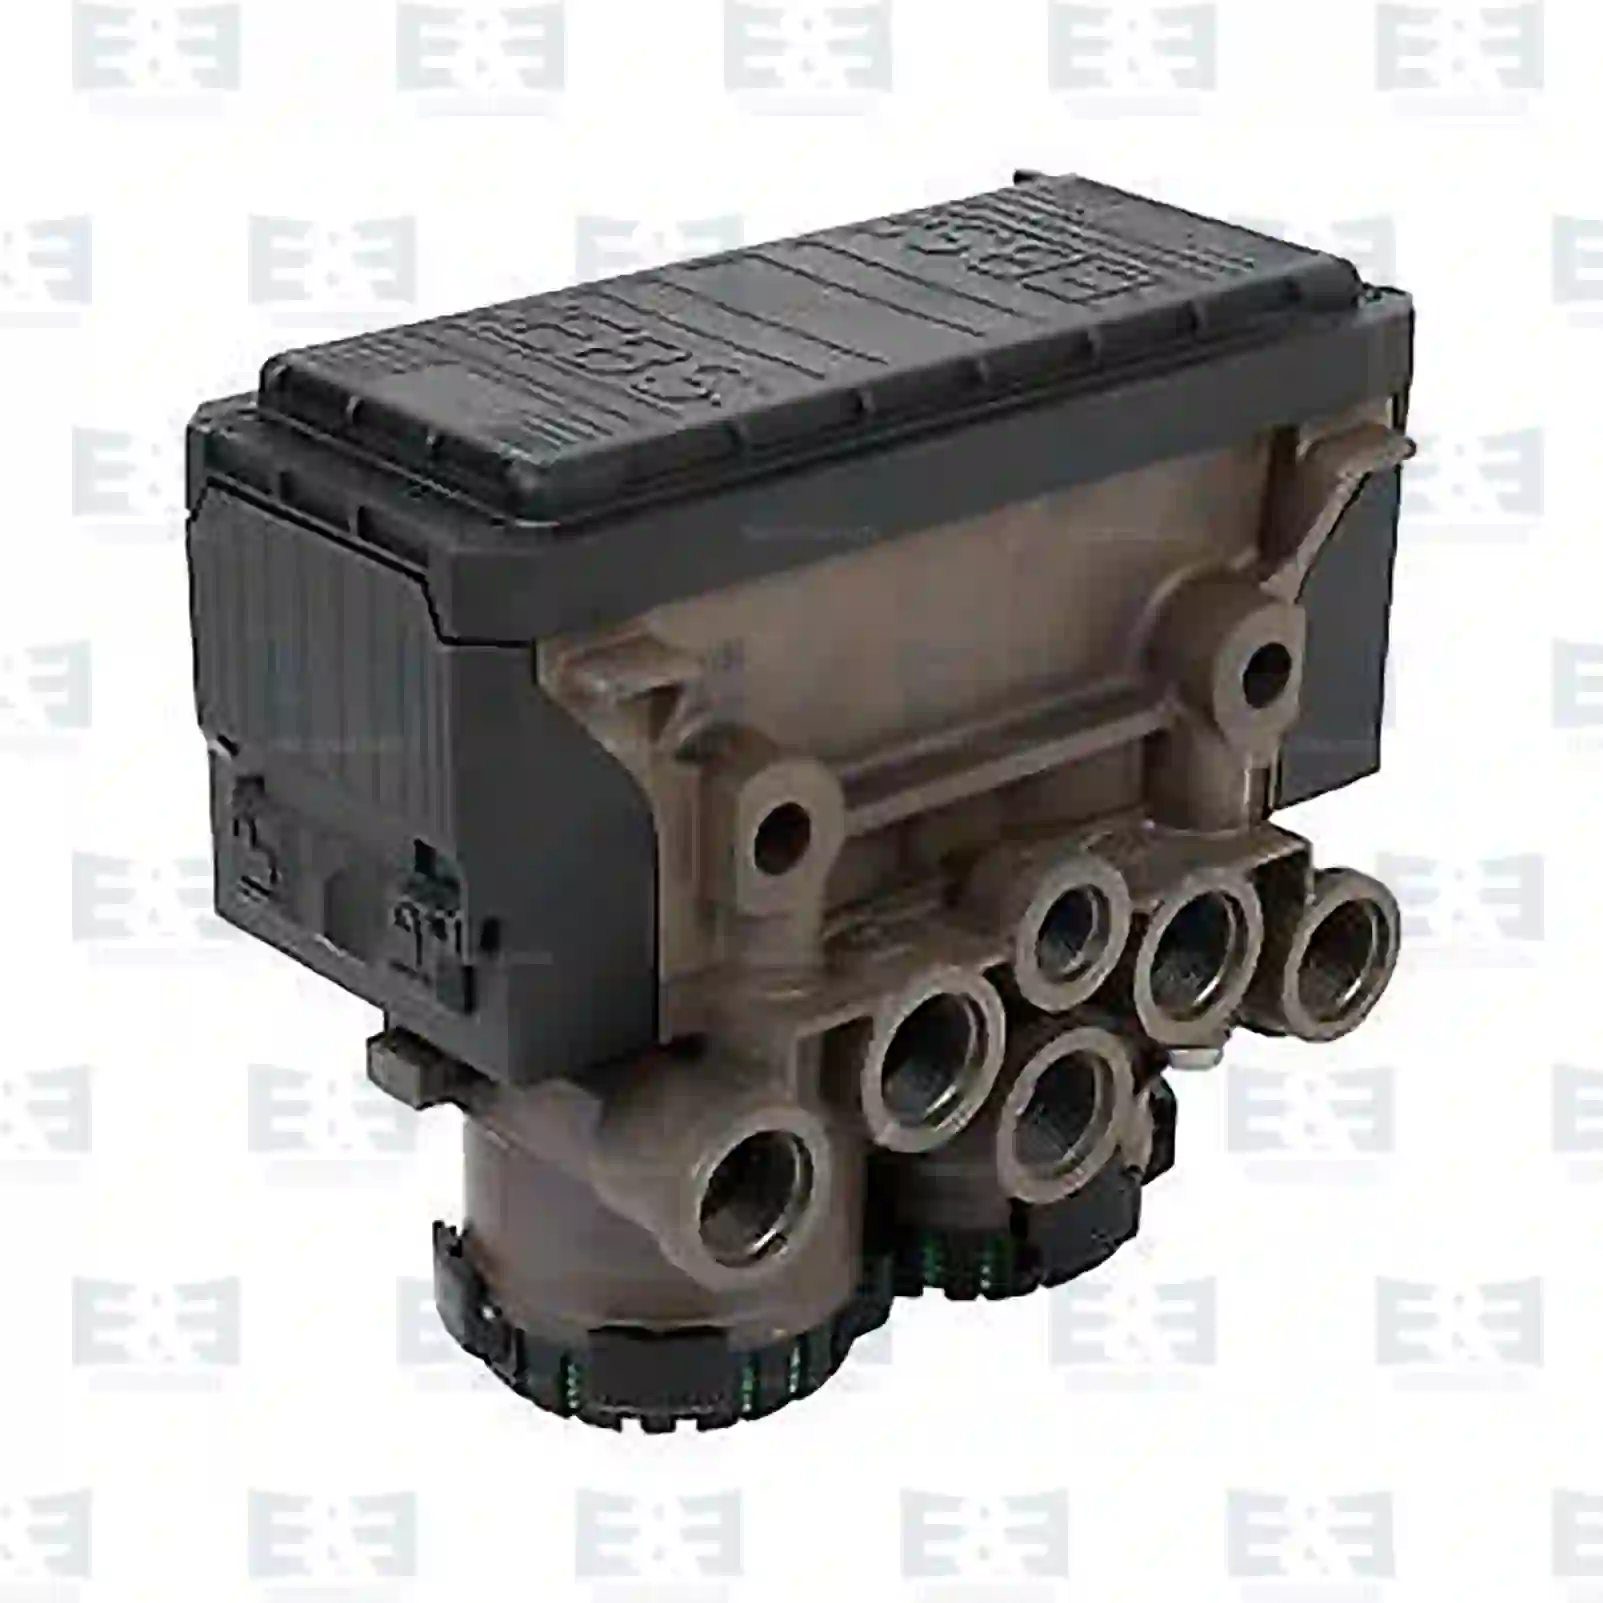 Pressure control valve, reman. / without old core, 2E2297114, 81521066017, 81521066026, 81521066042, 81521066046, 81521066050, 81521069017, 2V5611555A ||  2E2297114 E&E Truck Spare Parts | Truck Spare Parts, Auotomotive Spare Parts Pressure control valve, reman. / without old core, 2E2297114, 81521066017, 81521066026, 81521066042, 81521066046, 81521066050, 81521069017, 2V5611555A ||  2E2297114 E&E Truck Spare Parts | Truck Spare Parts, Auotomotive Spare Parts